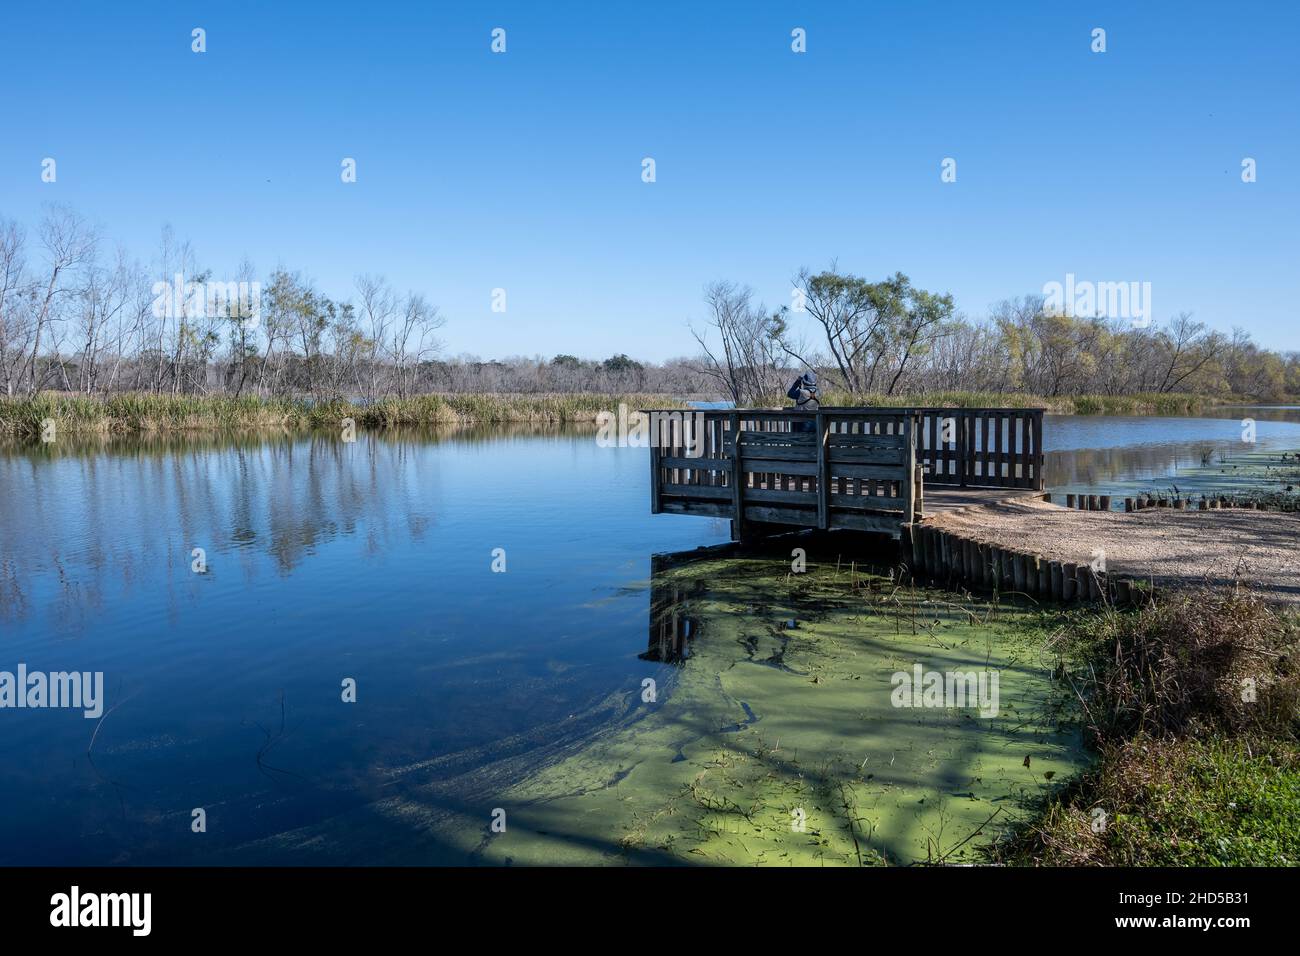 Un observateur d'oiseaux à la recherche d'oiseaux sur une terrasse en bois au bord du lac.Parc régional de Brazos Bend.Needville, Texas, États-Unis. Banque D'Images